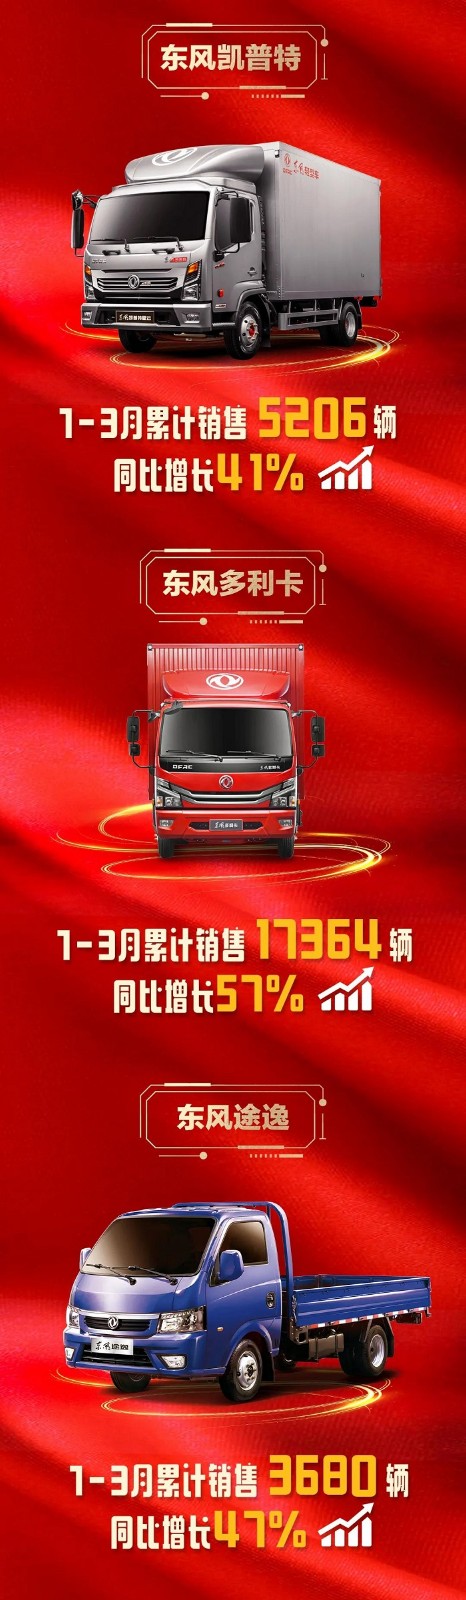 东风汽车股份本部1-3月汽车销售48134辆！